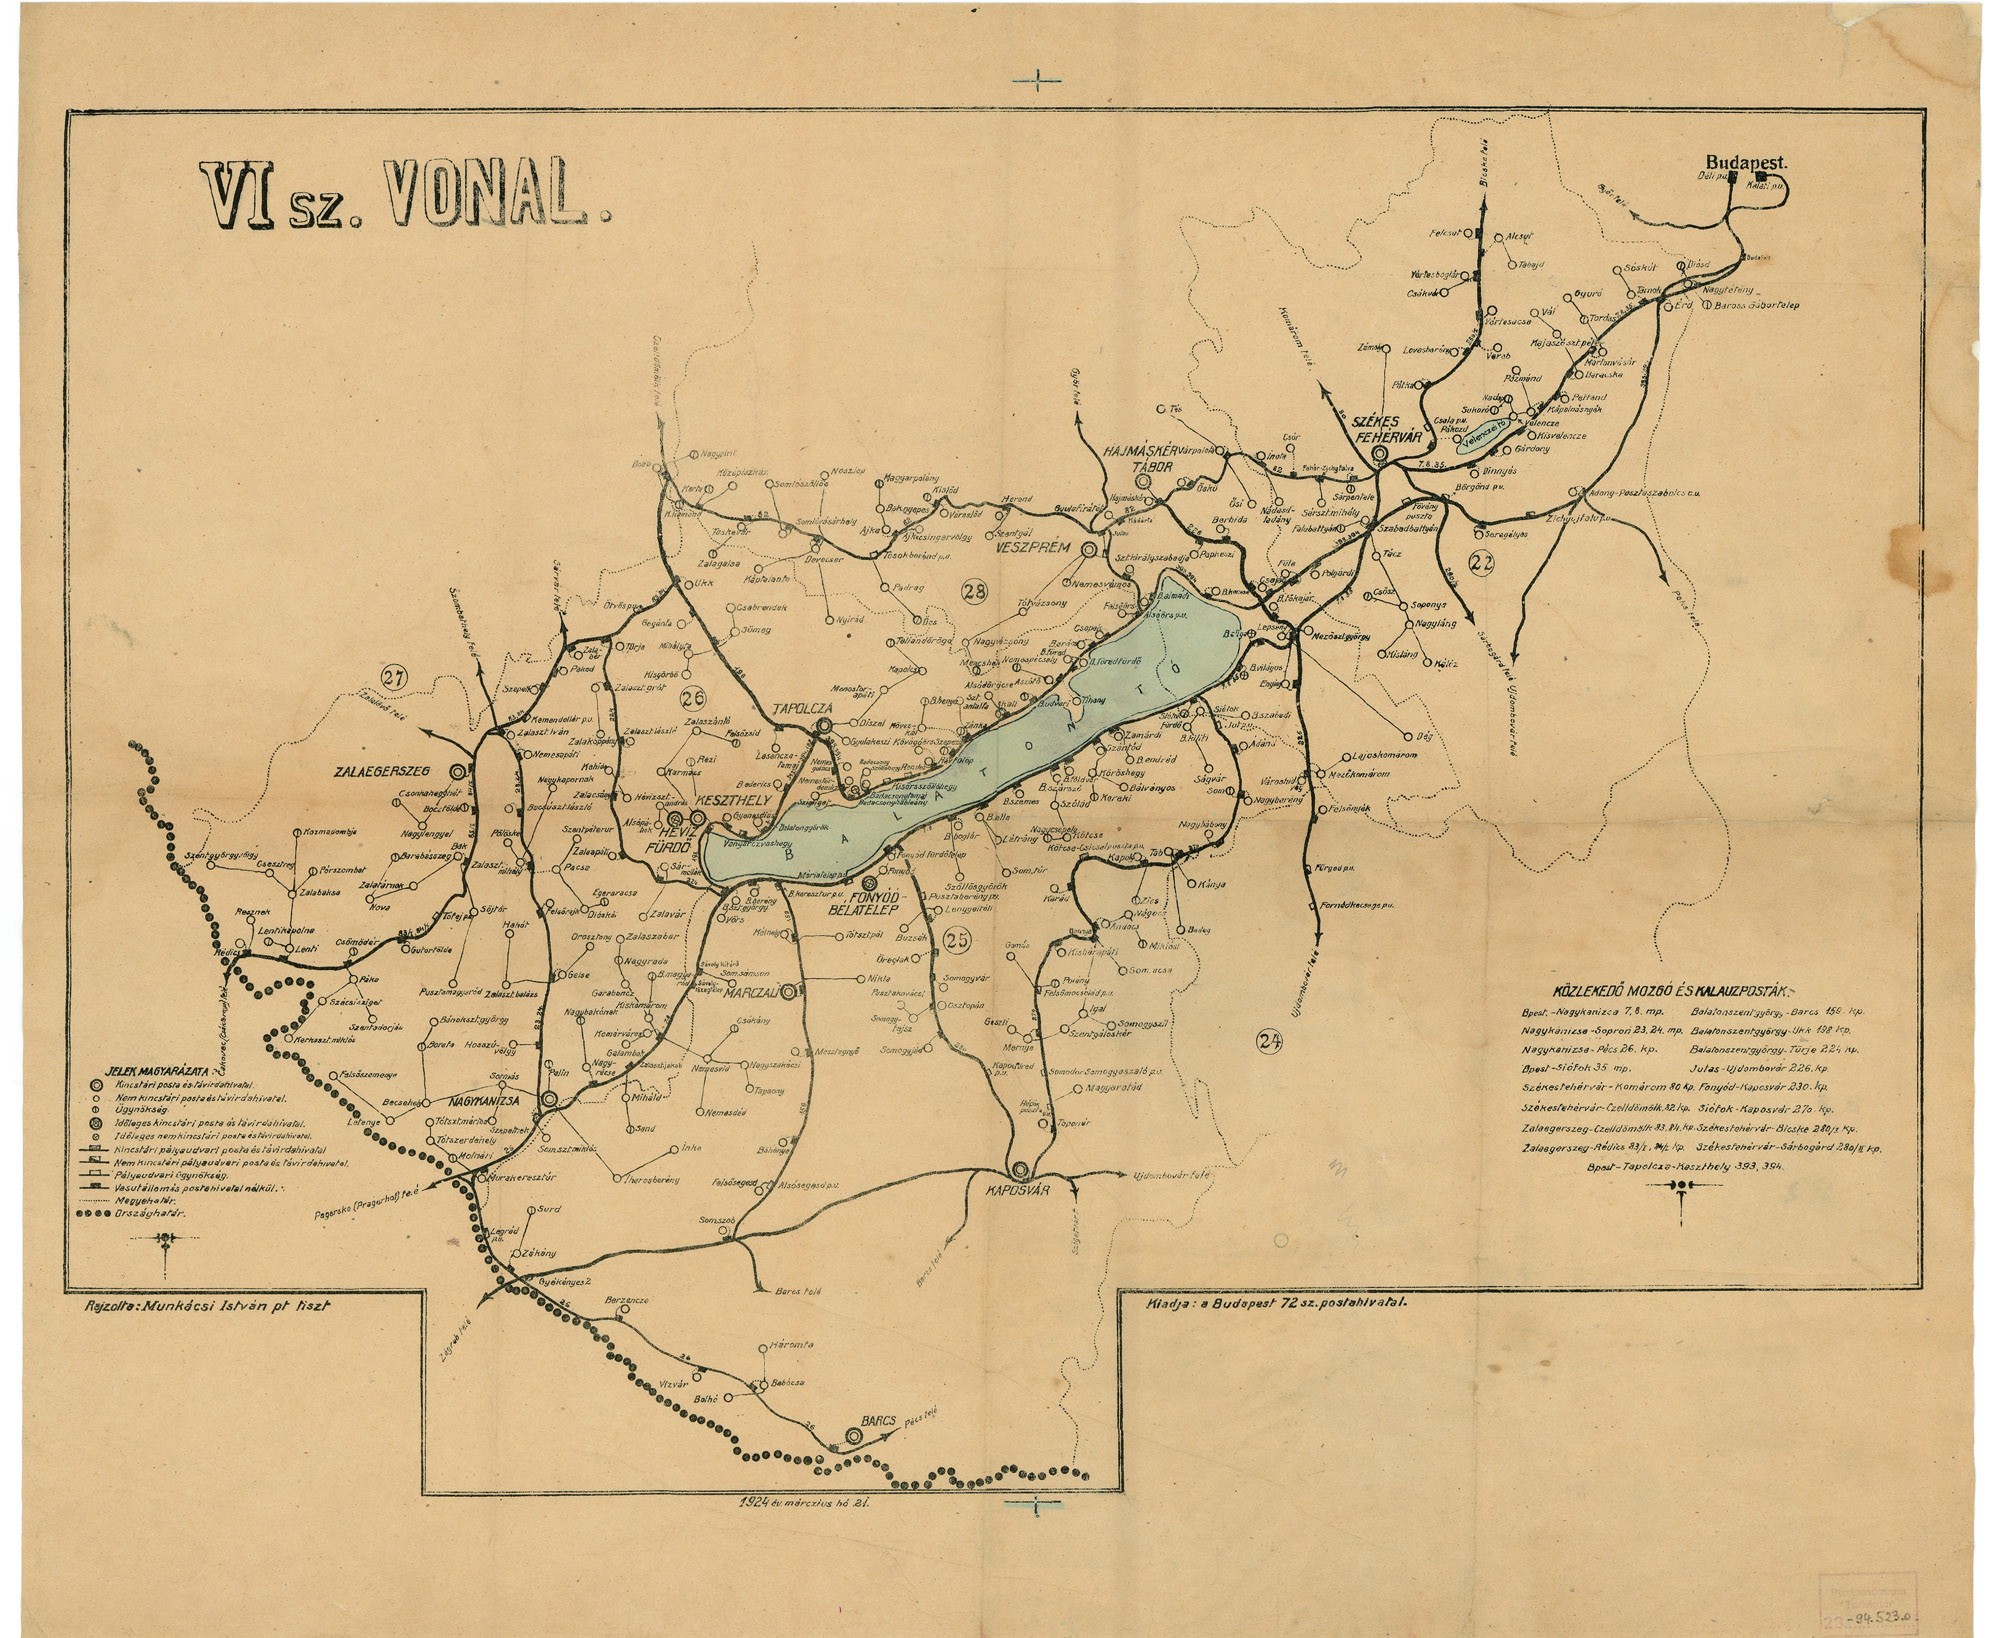 Mozgó- és kalauzposták térképe – VI. sz. vonal, 1924 (Postamúzeum CC BY-NC-SA)